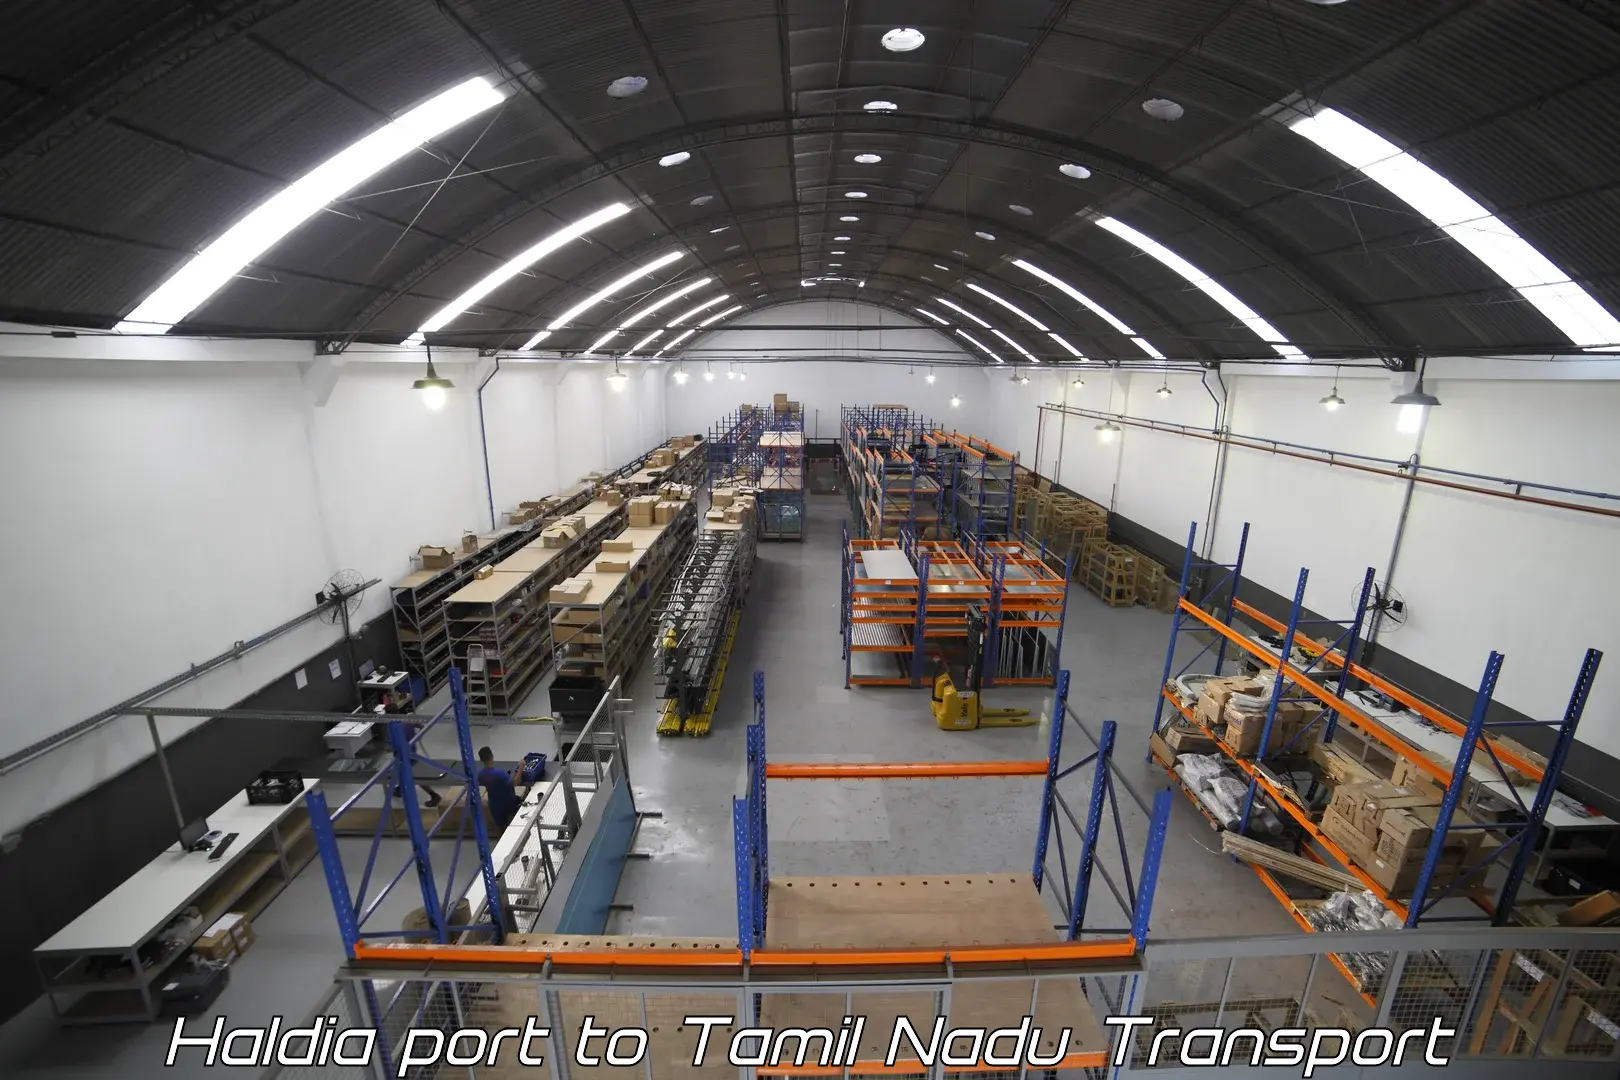 Goods transport services Haldia port to The Gandhigram Rural Institute